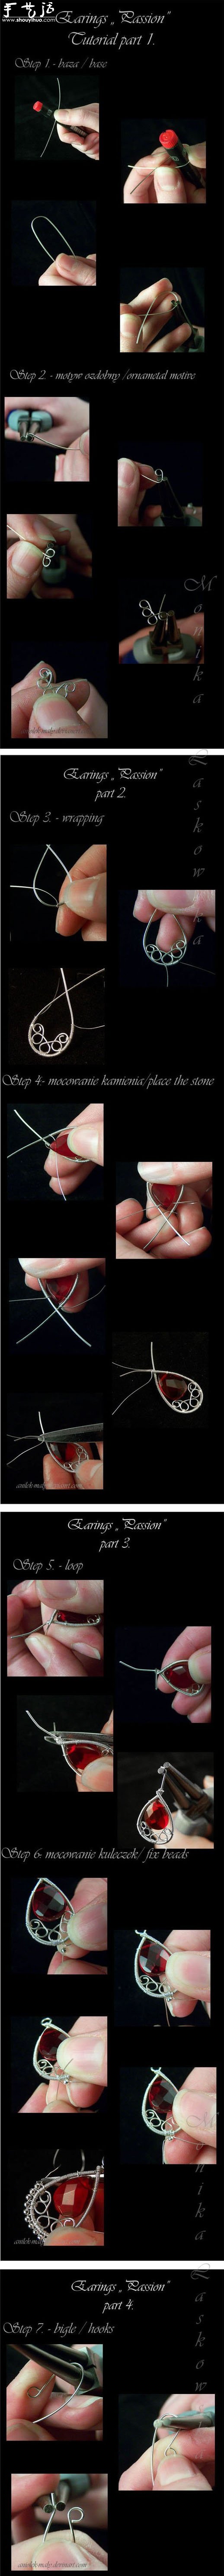 细铁丝手工制作精美耳环饰品的方法教程